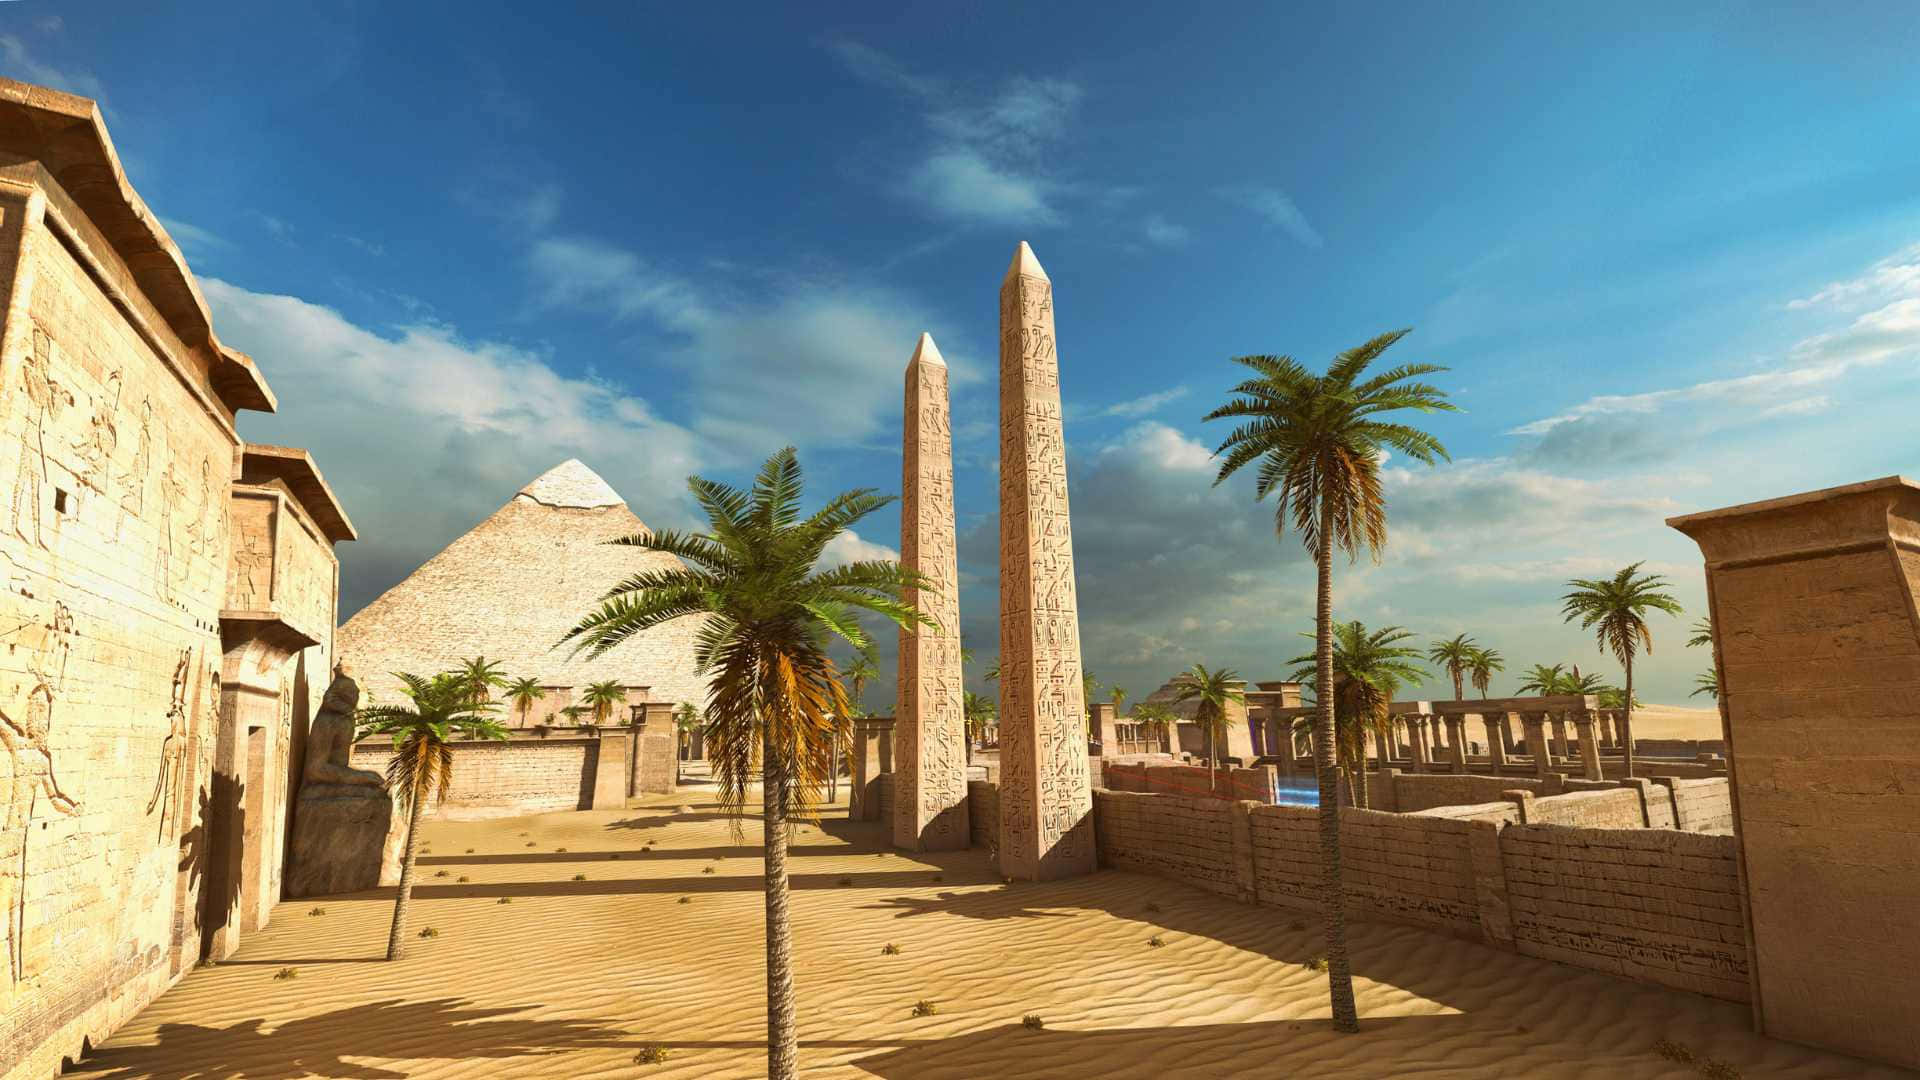 Högupplöstbakgrundsbild Av The Talos Principle I Egyptisk Civilisation.